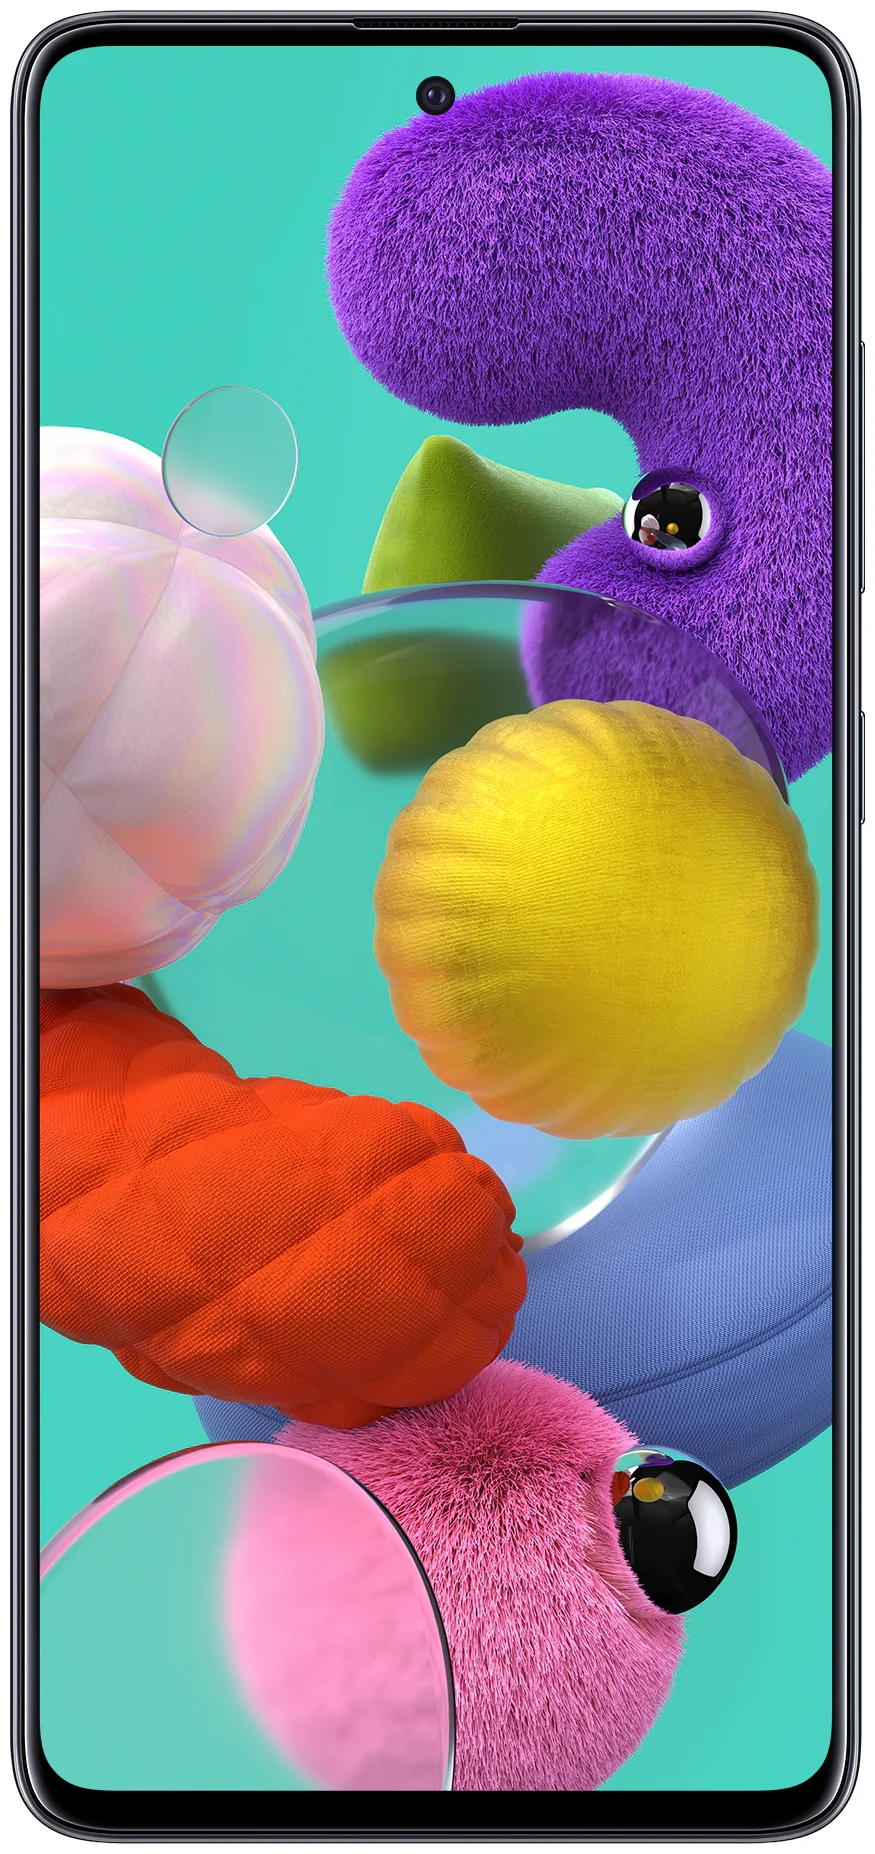 Samsung Galaxy A51 64GB - оперативная память: 4 ГБ